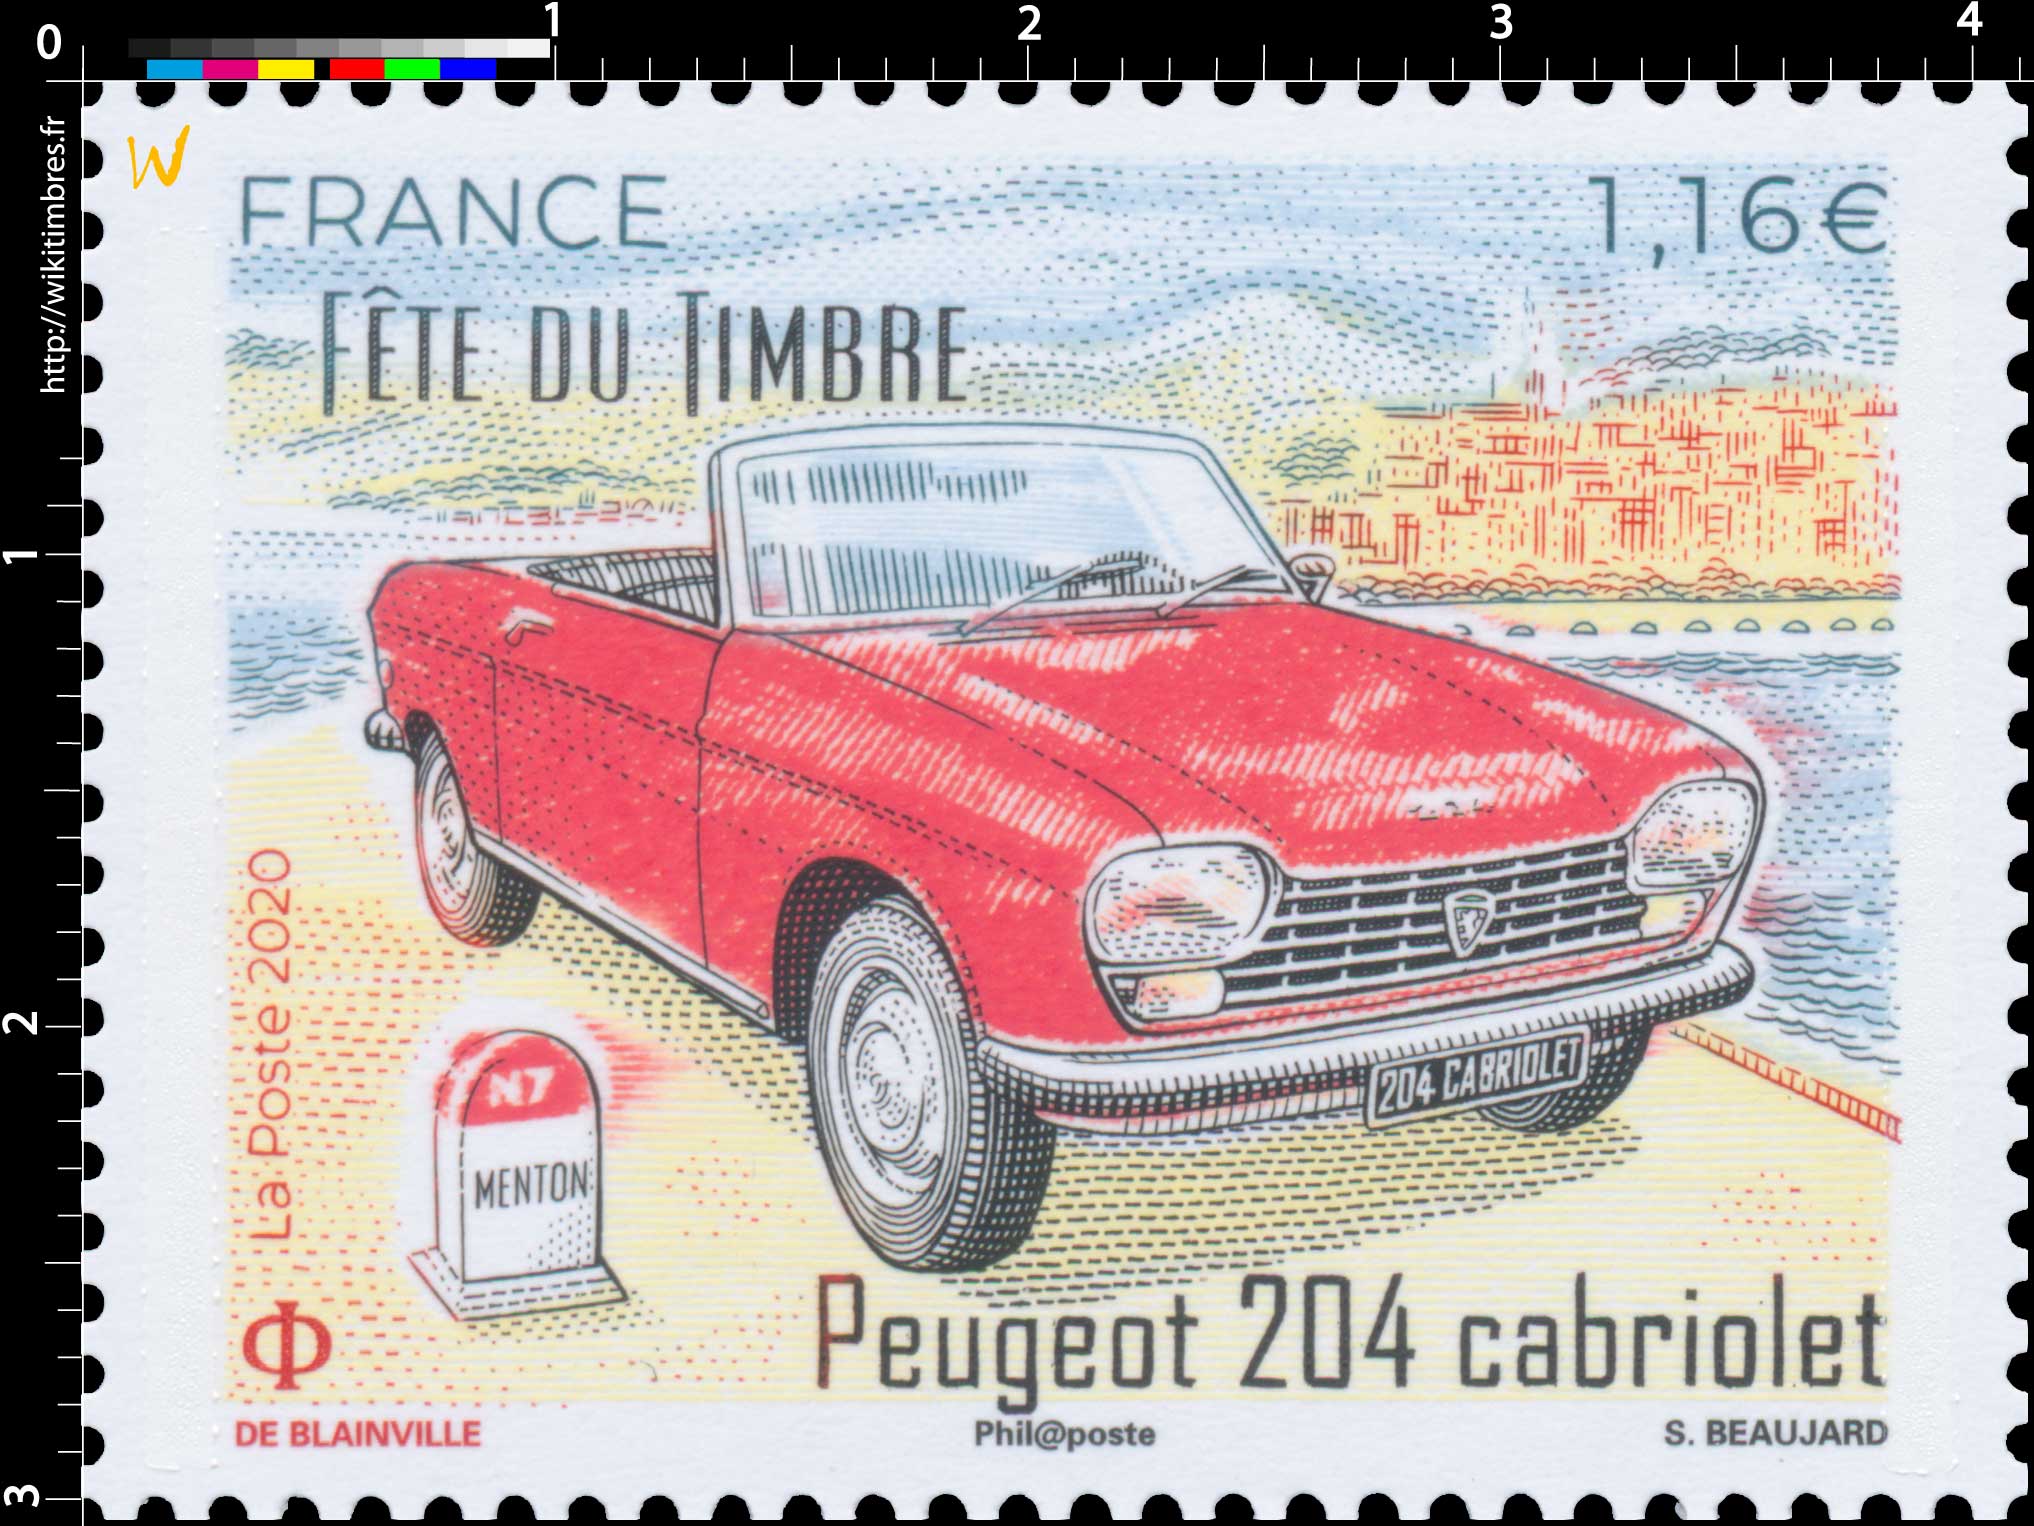 2020 Fête du timbre - Peugeot 204 cabriolet